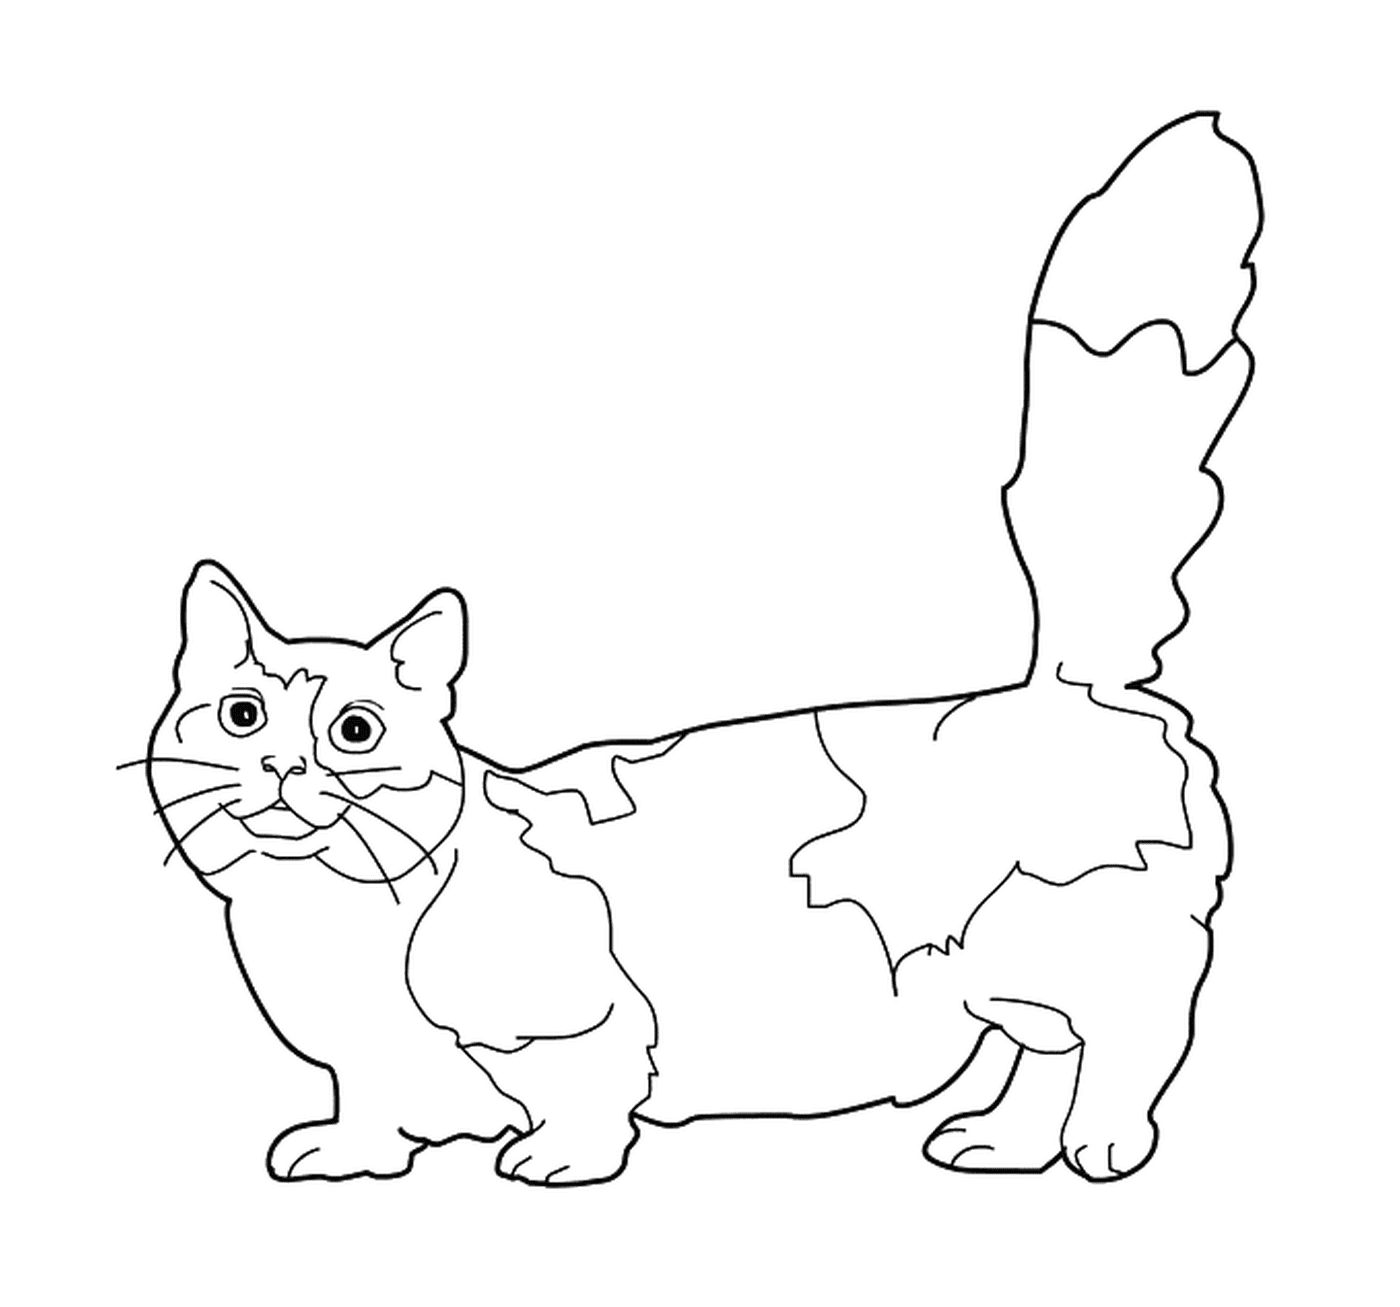  Un munchkin, un gatto con le gambe corte 